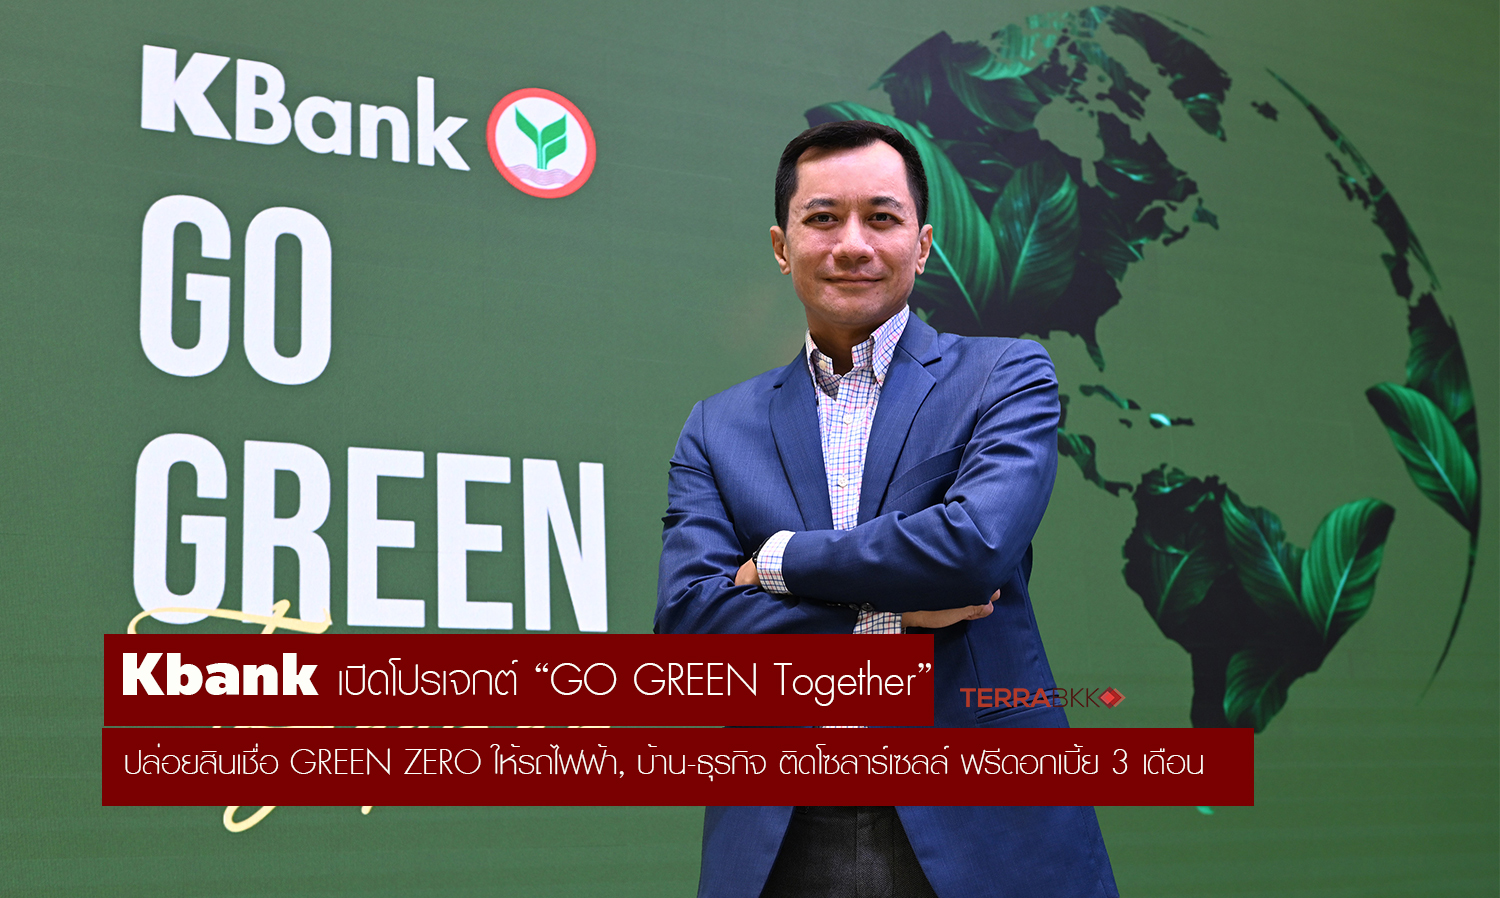 kbank-ปล่อยสินเชื่อ-green-zero-รถไฟฟ้า-บ้าน-ธุรกิจ-ติดโซลาร์เซลล์-ฟรีดอกเบี้ย-3-เดือน